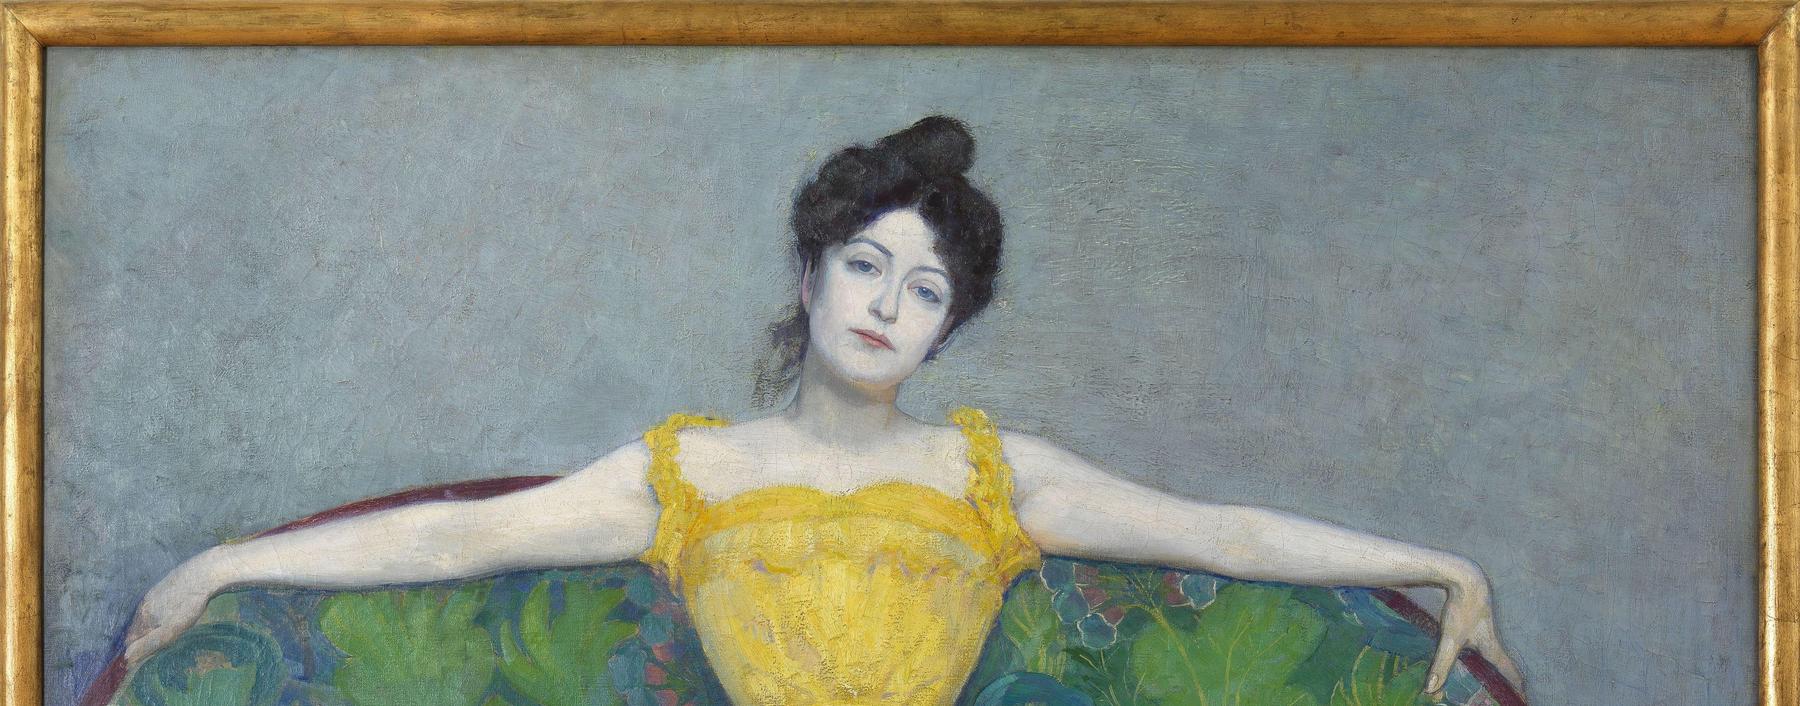 Er war Gründungsmitglied der Wiener 
Secession: Max Kurzweil porträtiert 1899 seine Ehefrau als „Dame in Gelb".